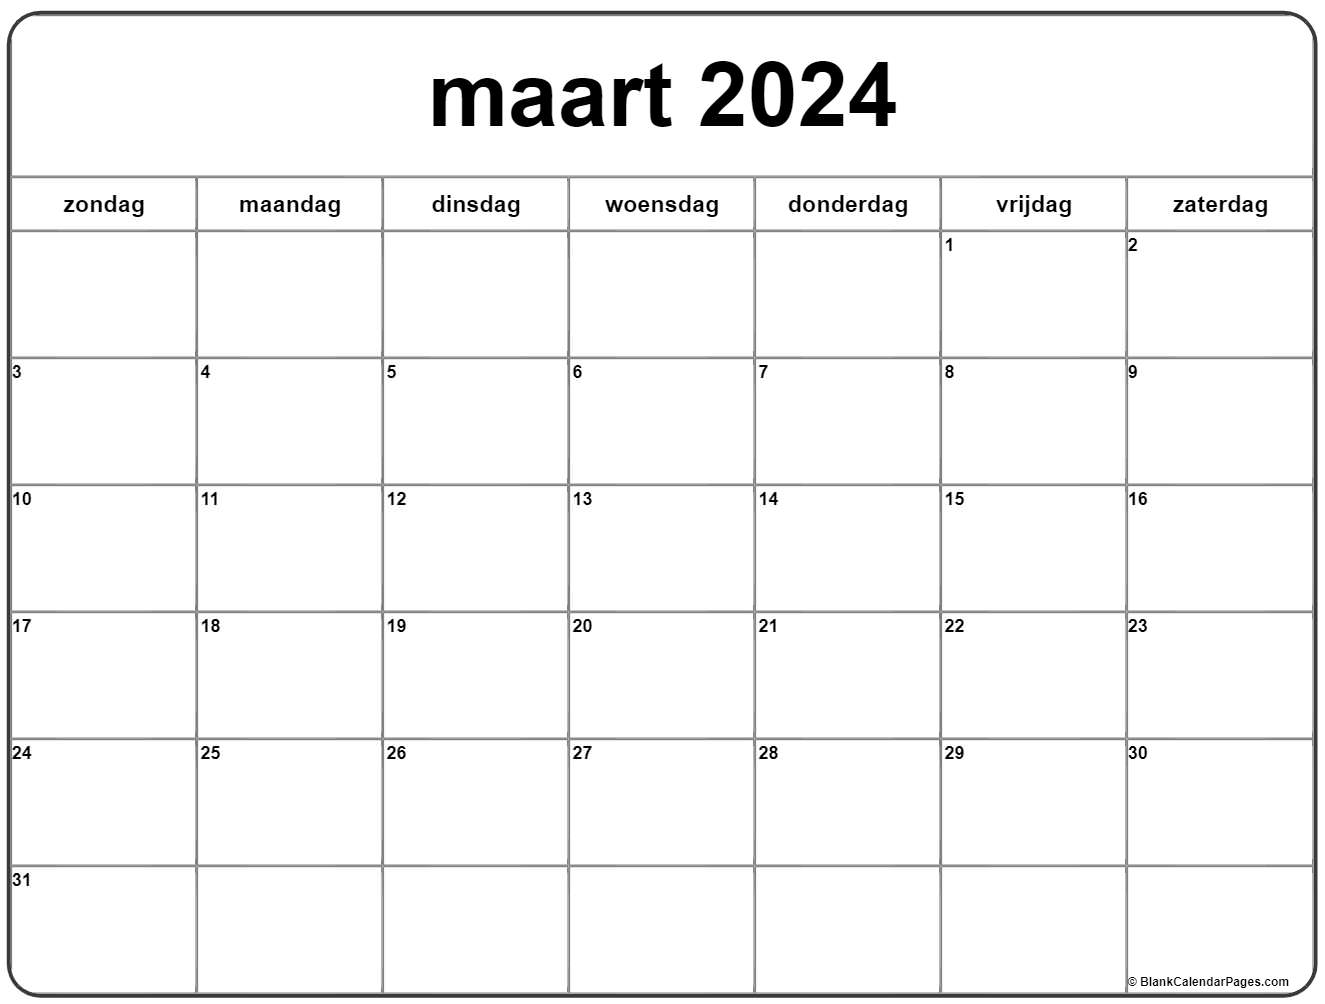 Mart 2024 Calendar Calendar 2024